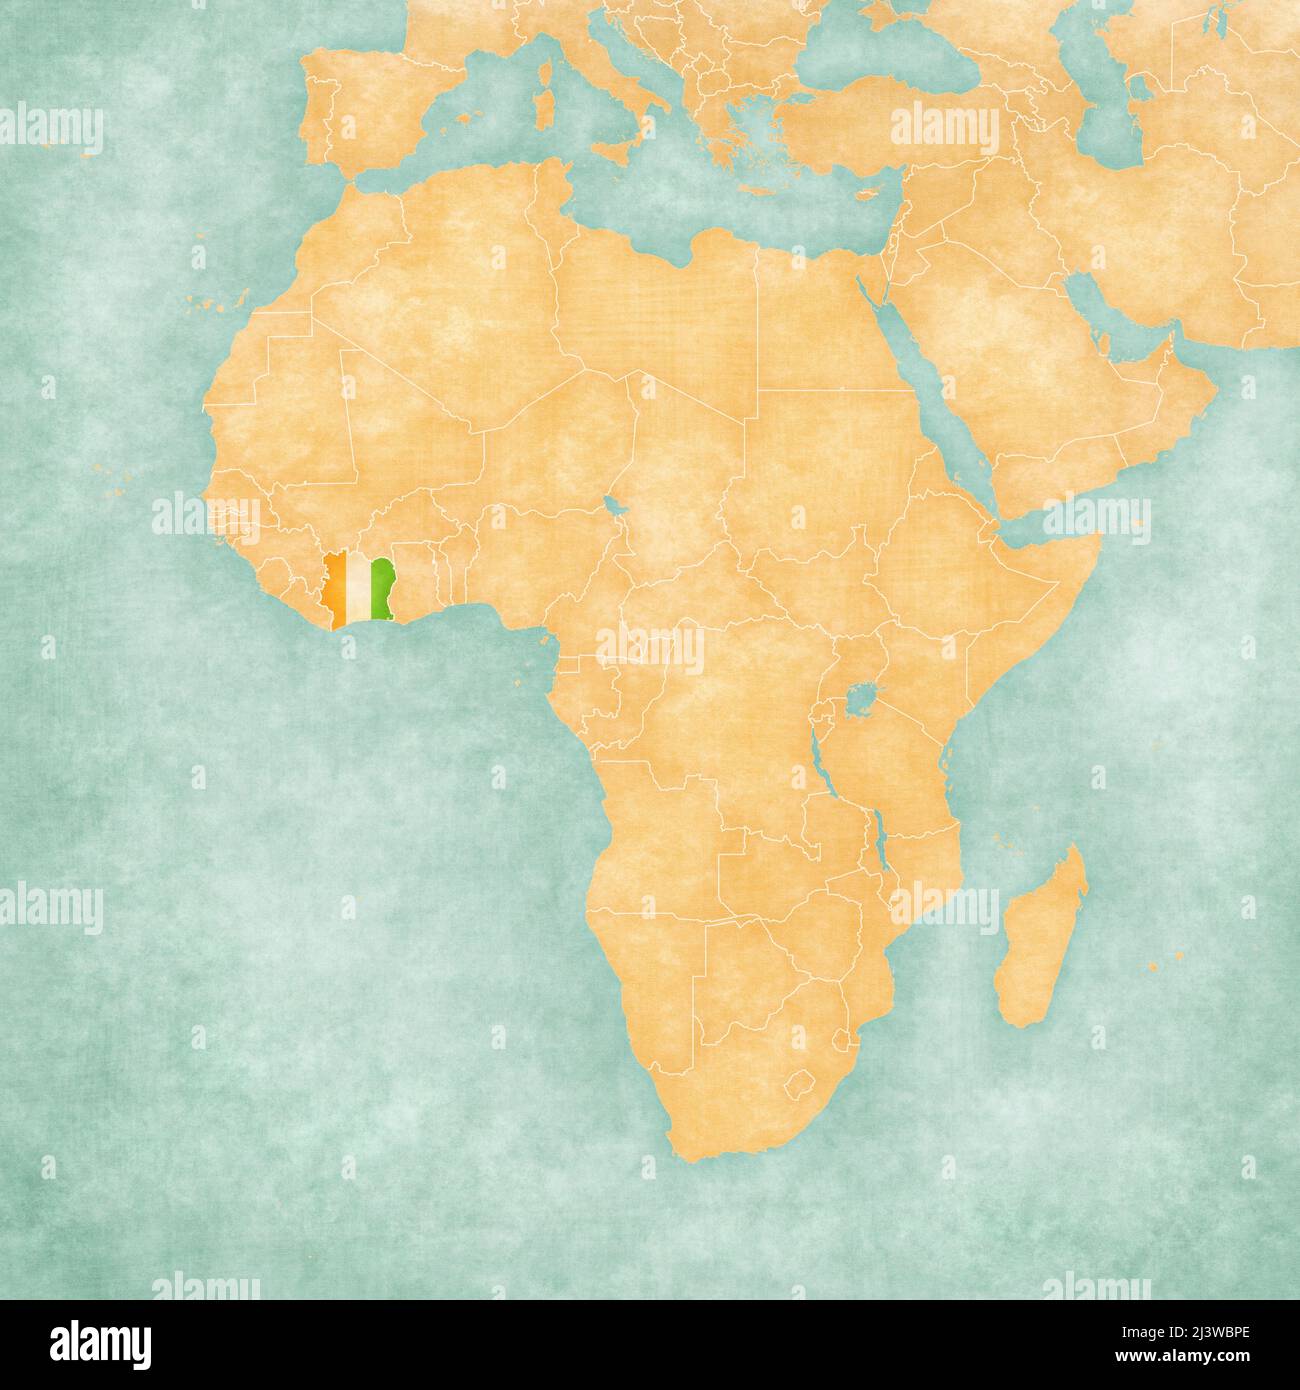 Costa de Marfil (bandera de Costa de Marfil) en el mapa de África. El mapa es de suave grunge y estilo vintage, como pintura acuarela sobre papel viejo. Foto de stock